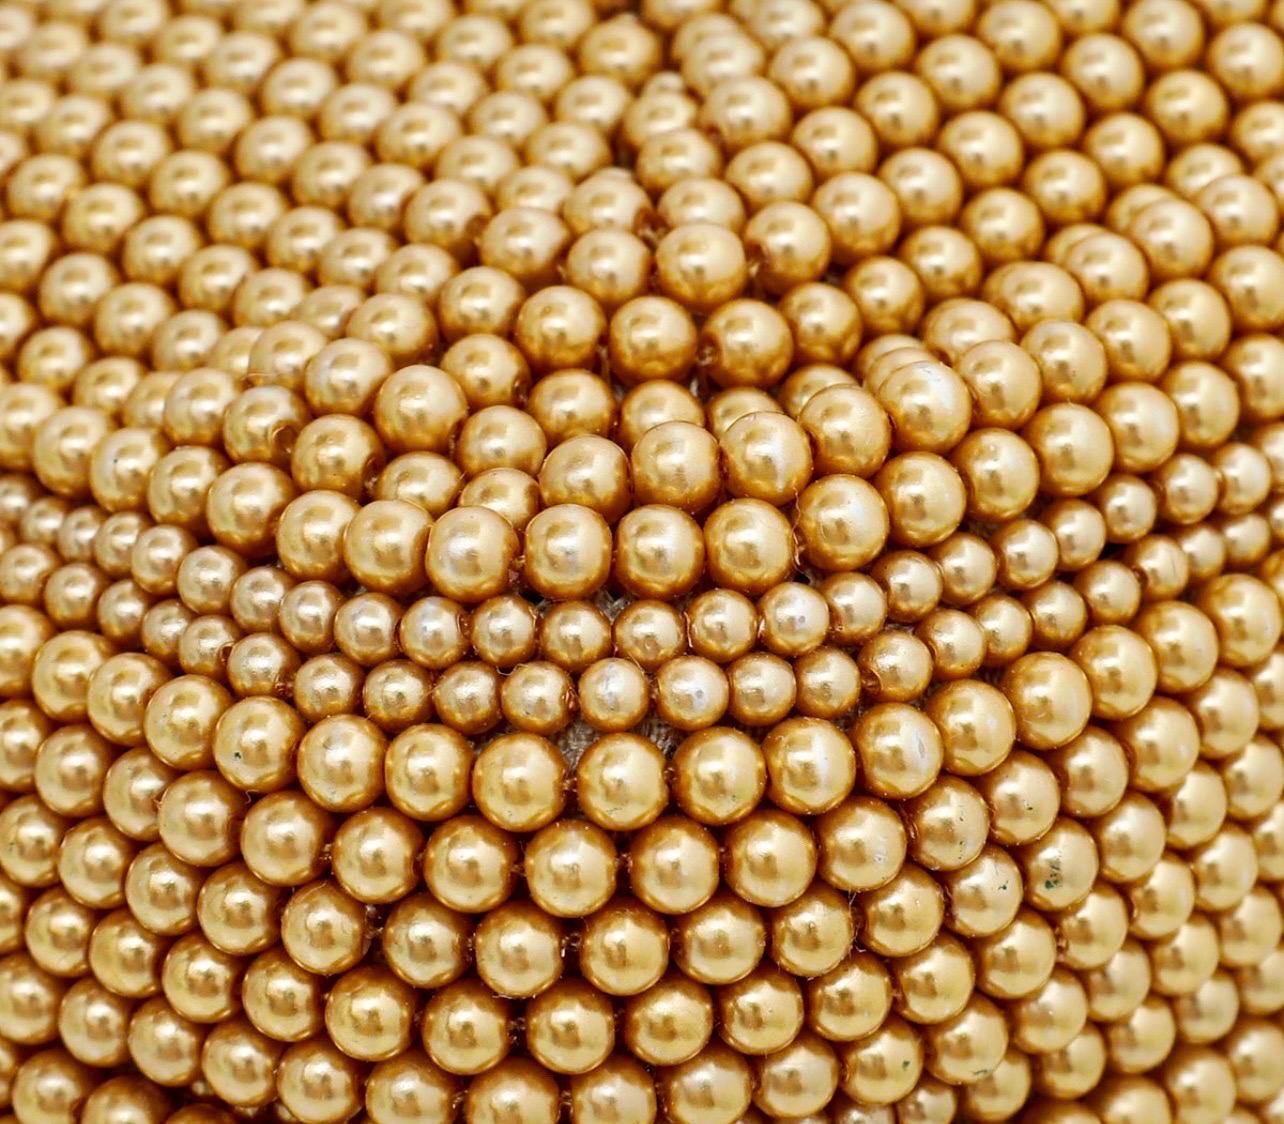 UNWORN Fendi Embroidered Golden Baguette Handbag Flap Bag Clutch - Full Set 7